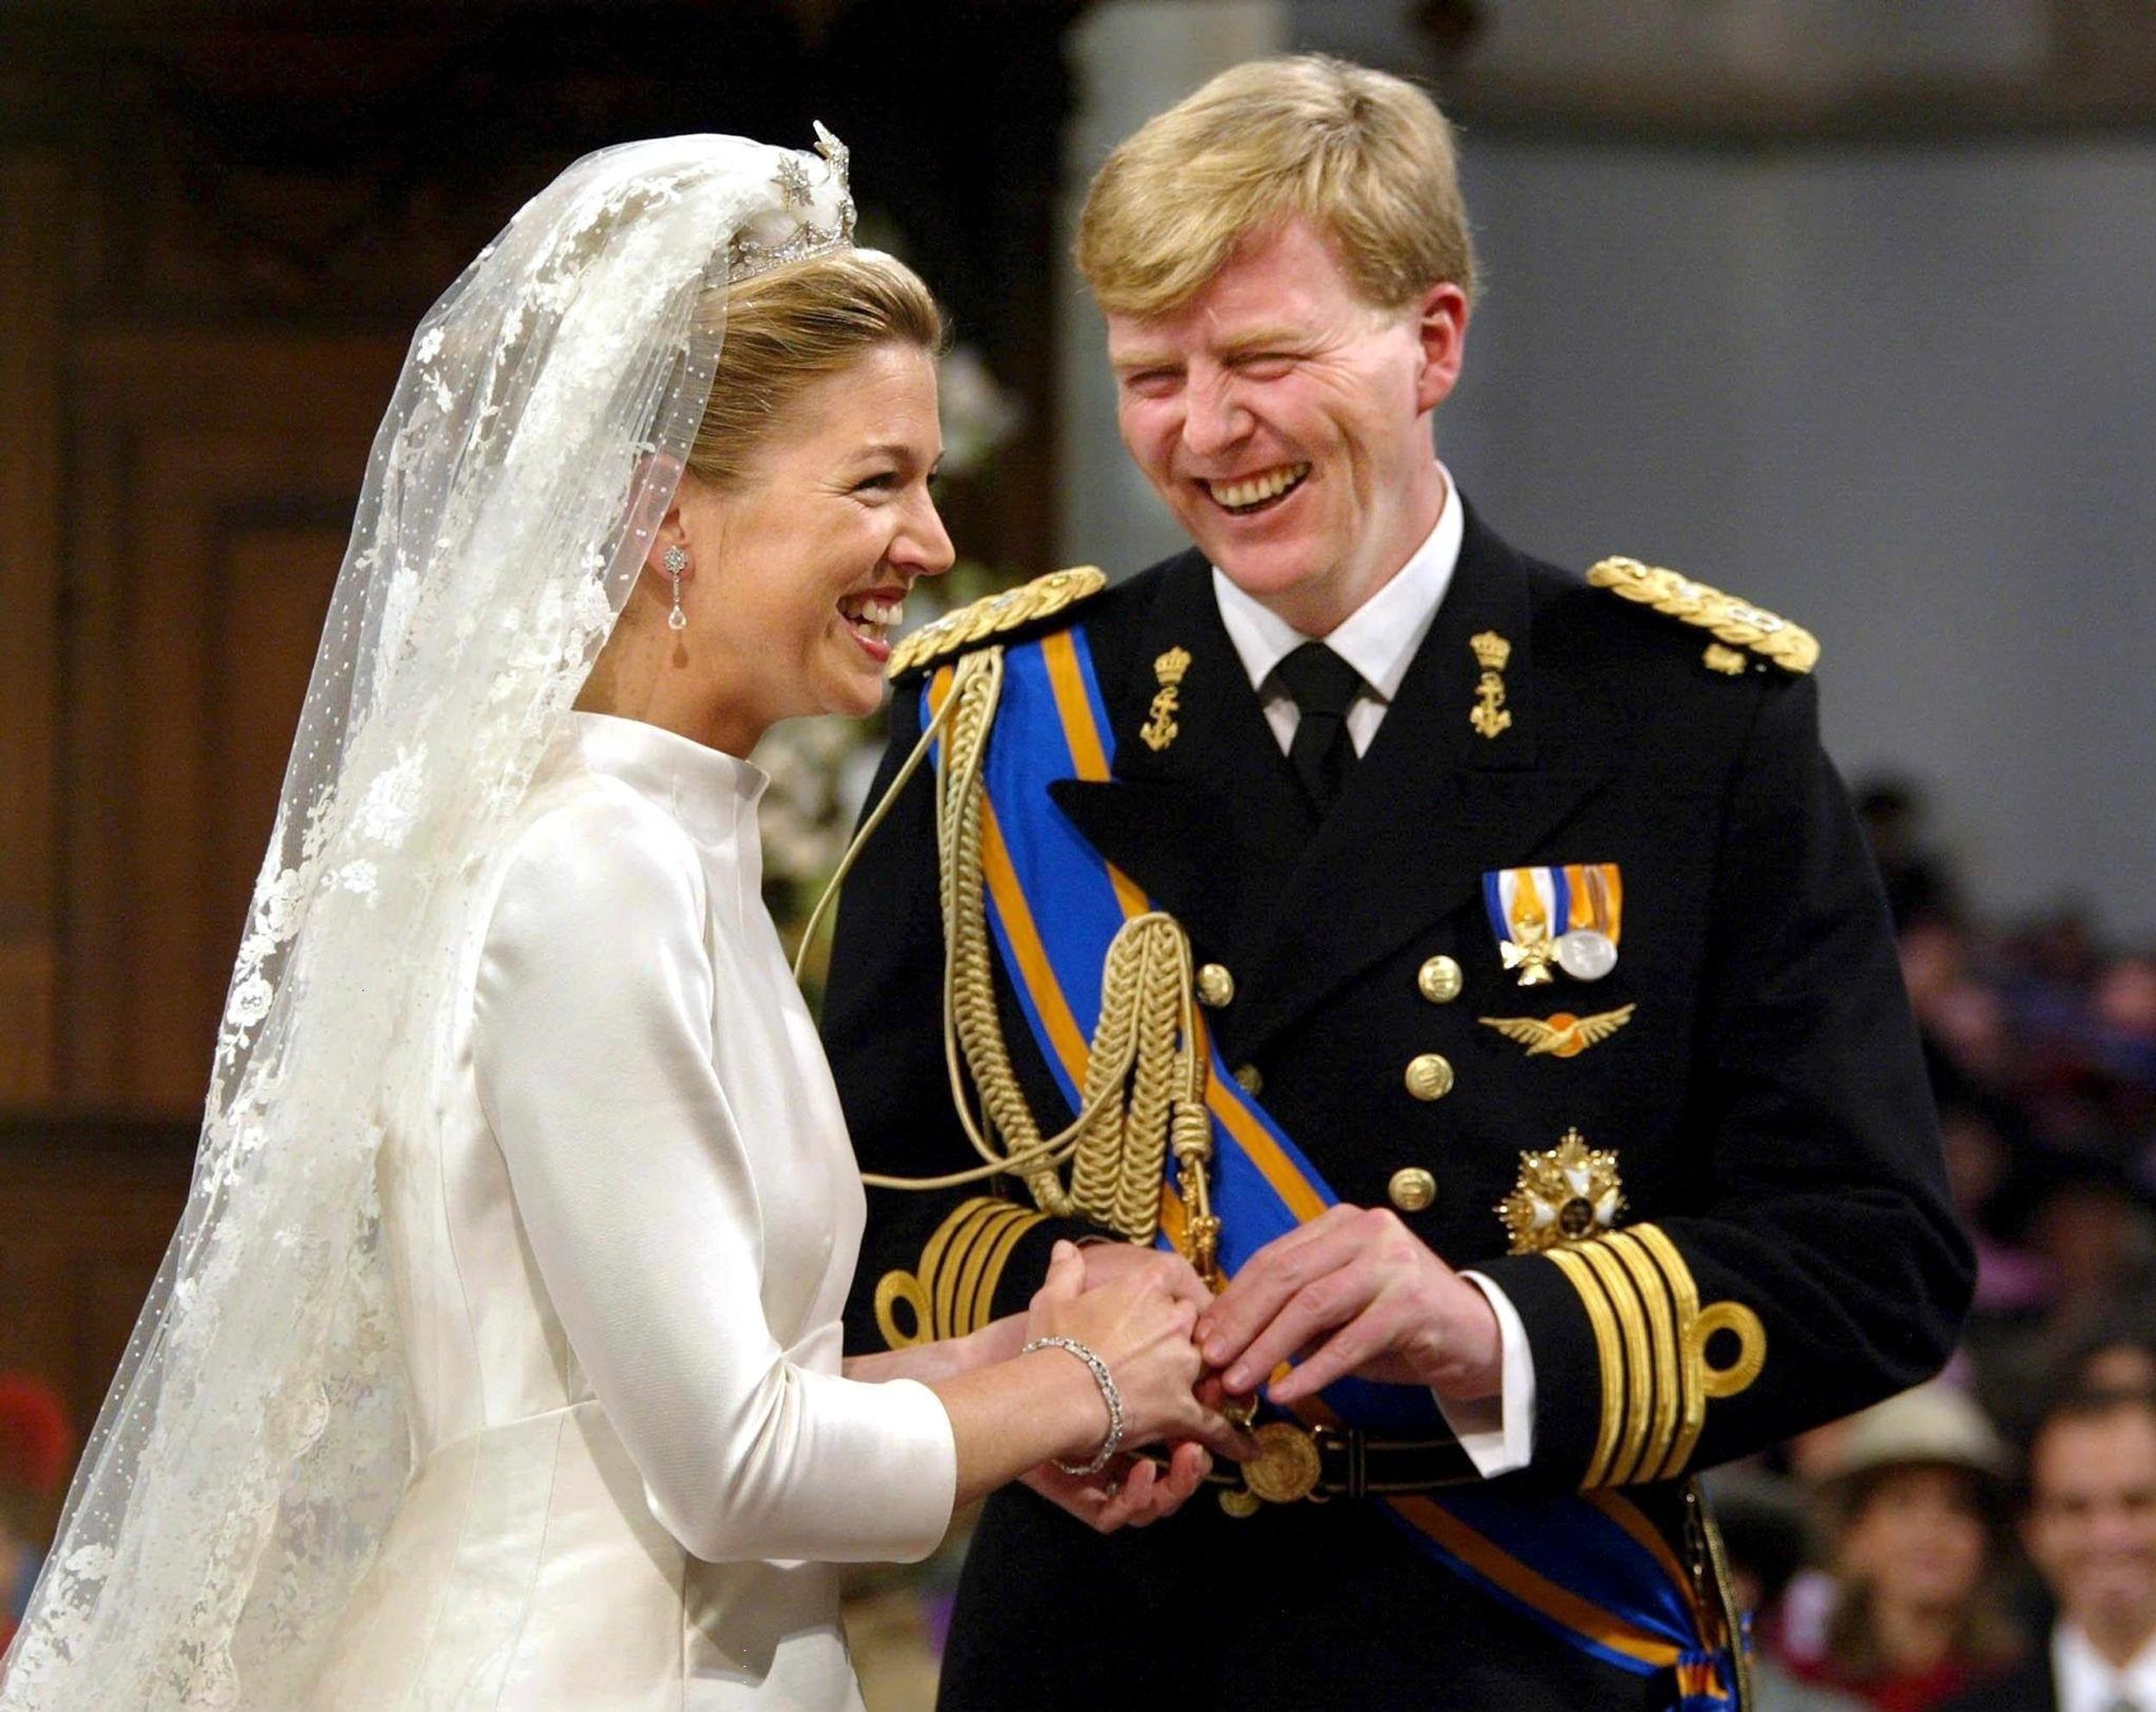 Toenmalige kroonprins Willem-Alexander en prinses Máxima op hun huwelijk in 2002.